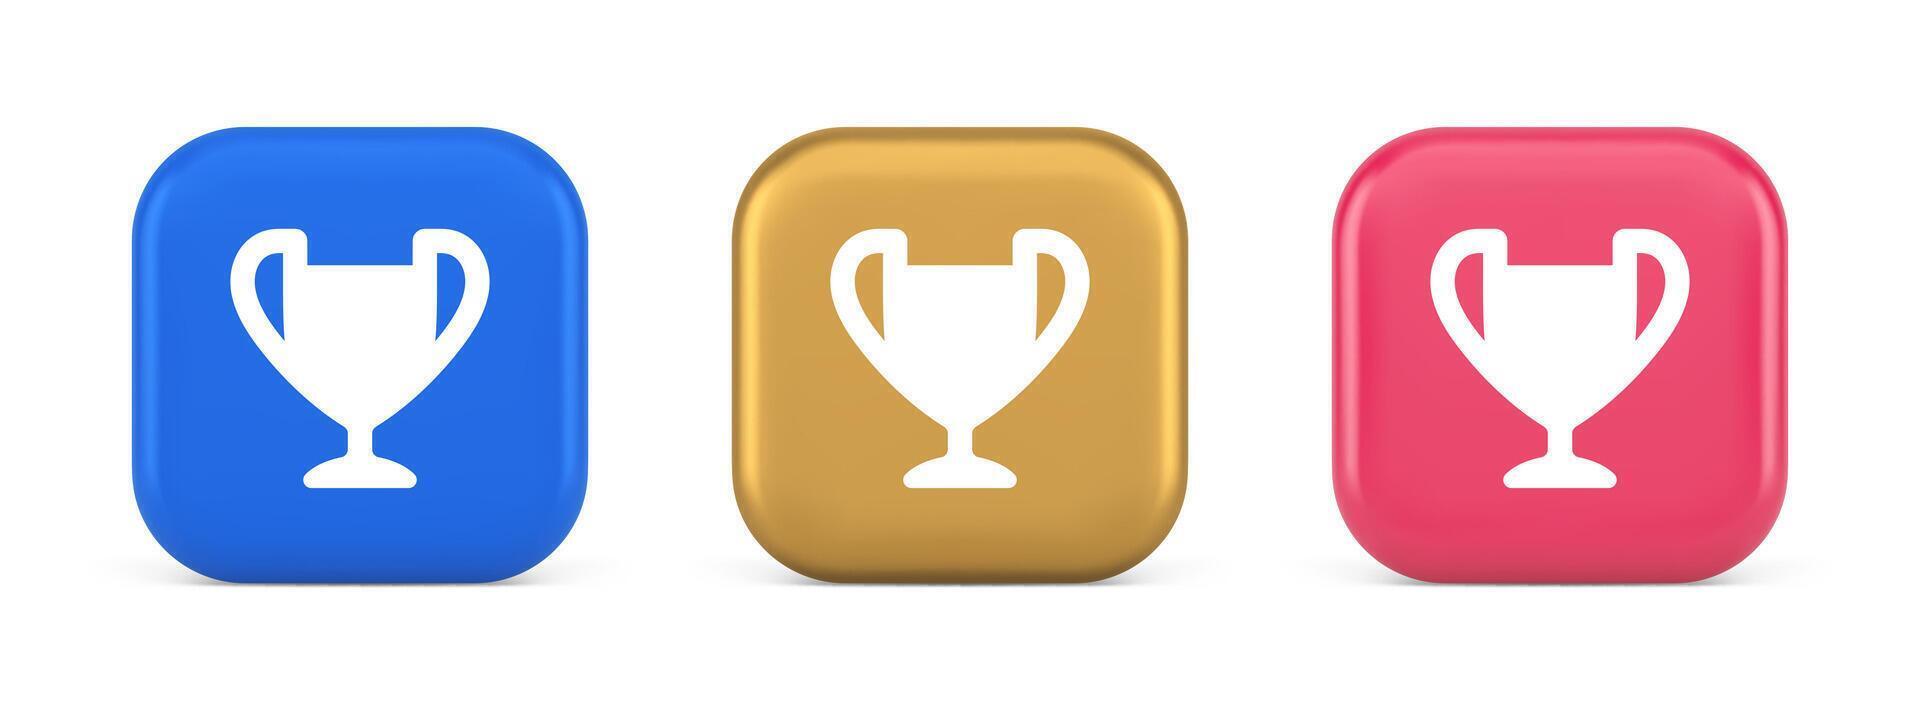 copo troféu prêmio melhor ganhar realização botão primeiro Lugar, colocar jogos conectados conexão 3d ícone vetor